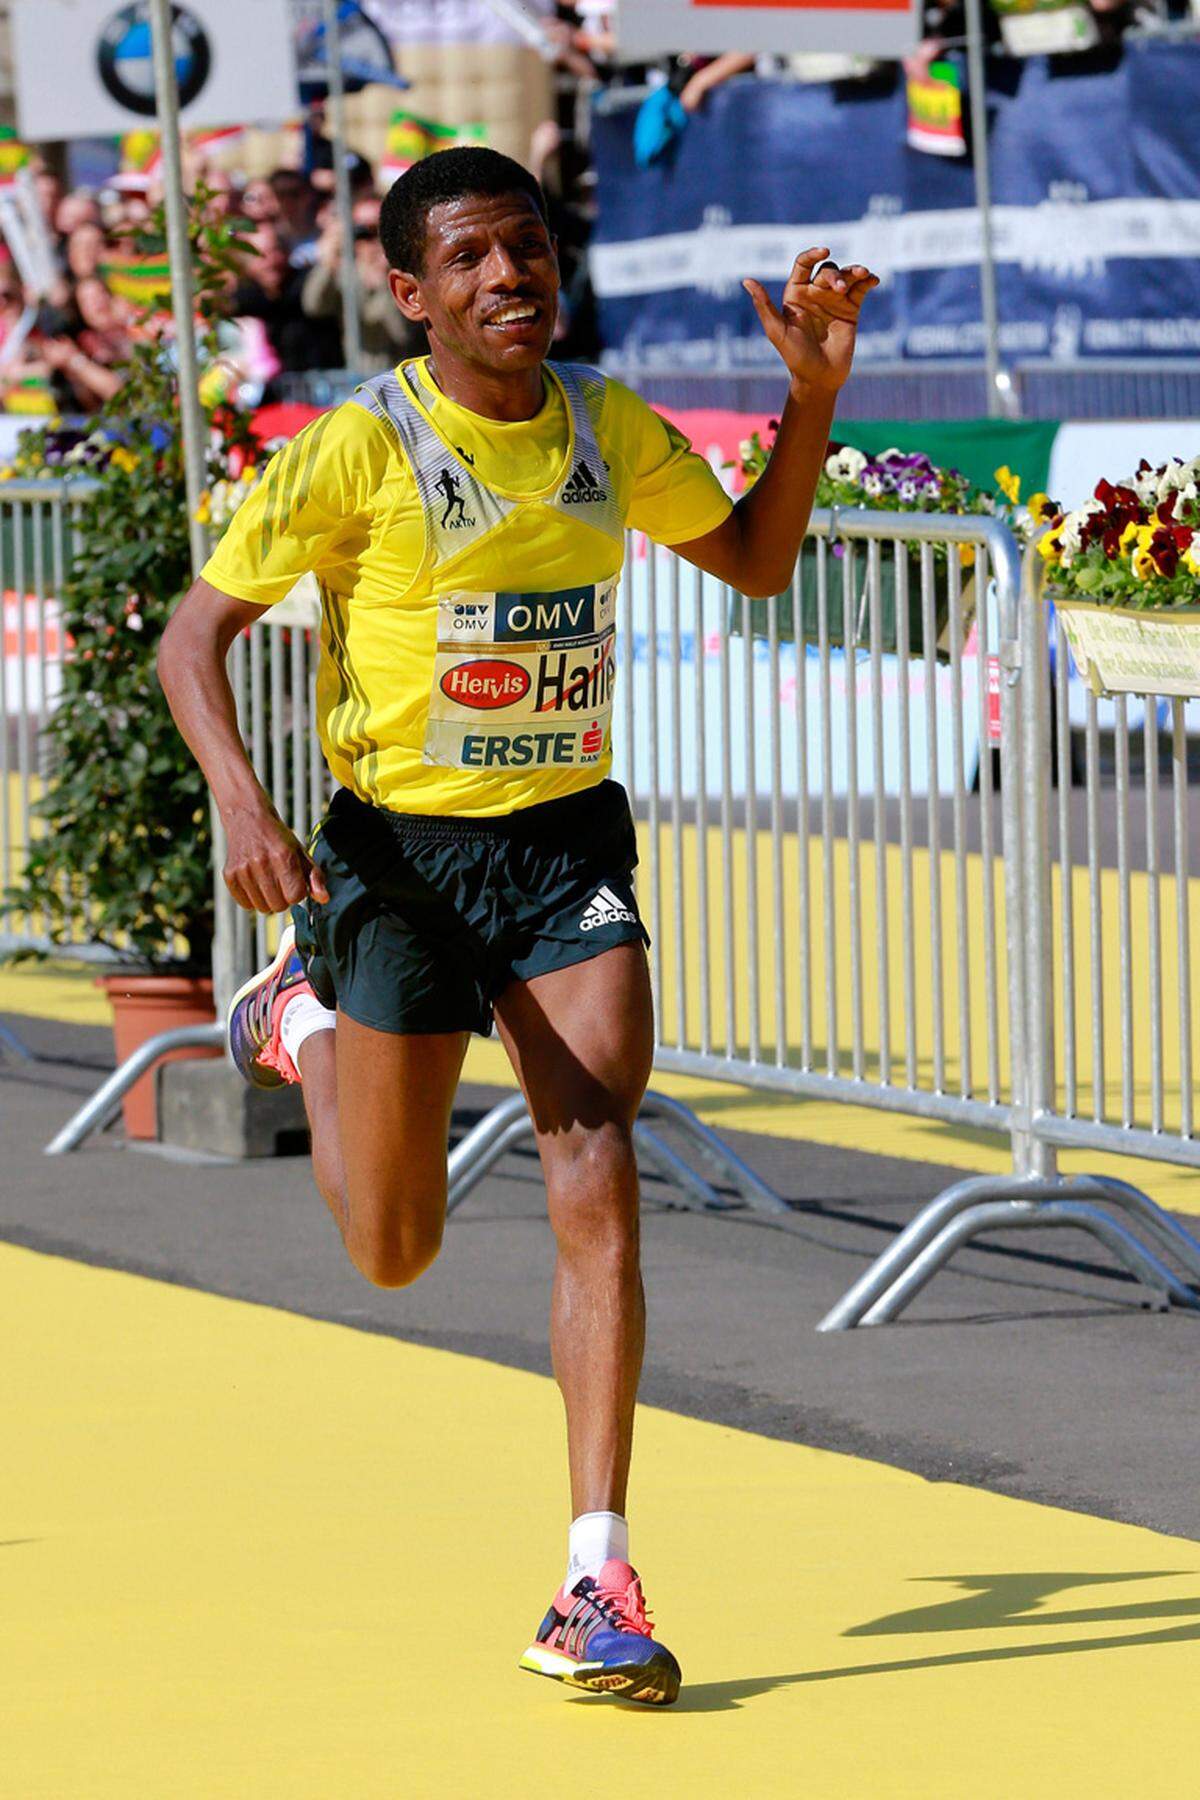 Auch ein Star der Läuferszene, der ehemalige Marathon-Weltrekordhalter Haile Gebrselassie meldete sich per Twitter: "Laufen bringt Menschen zusammen. Aber was gerade in Boston passiert ist, ist furchtbar. Meine Gedanken sind bei den Menschen in Boston", schrieb der Äthiopier.